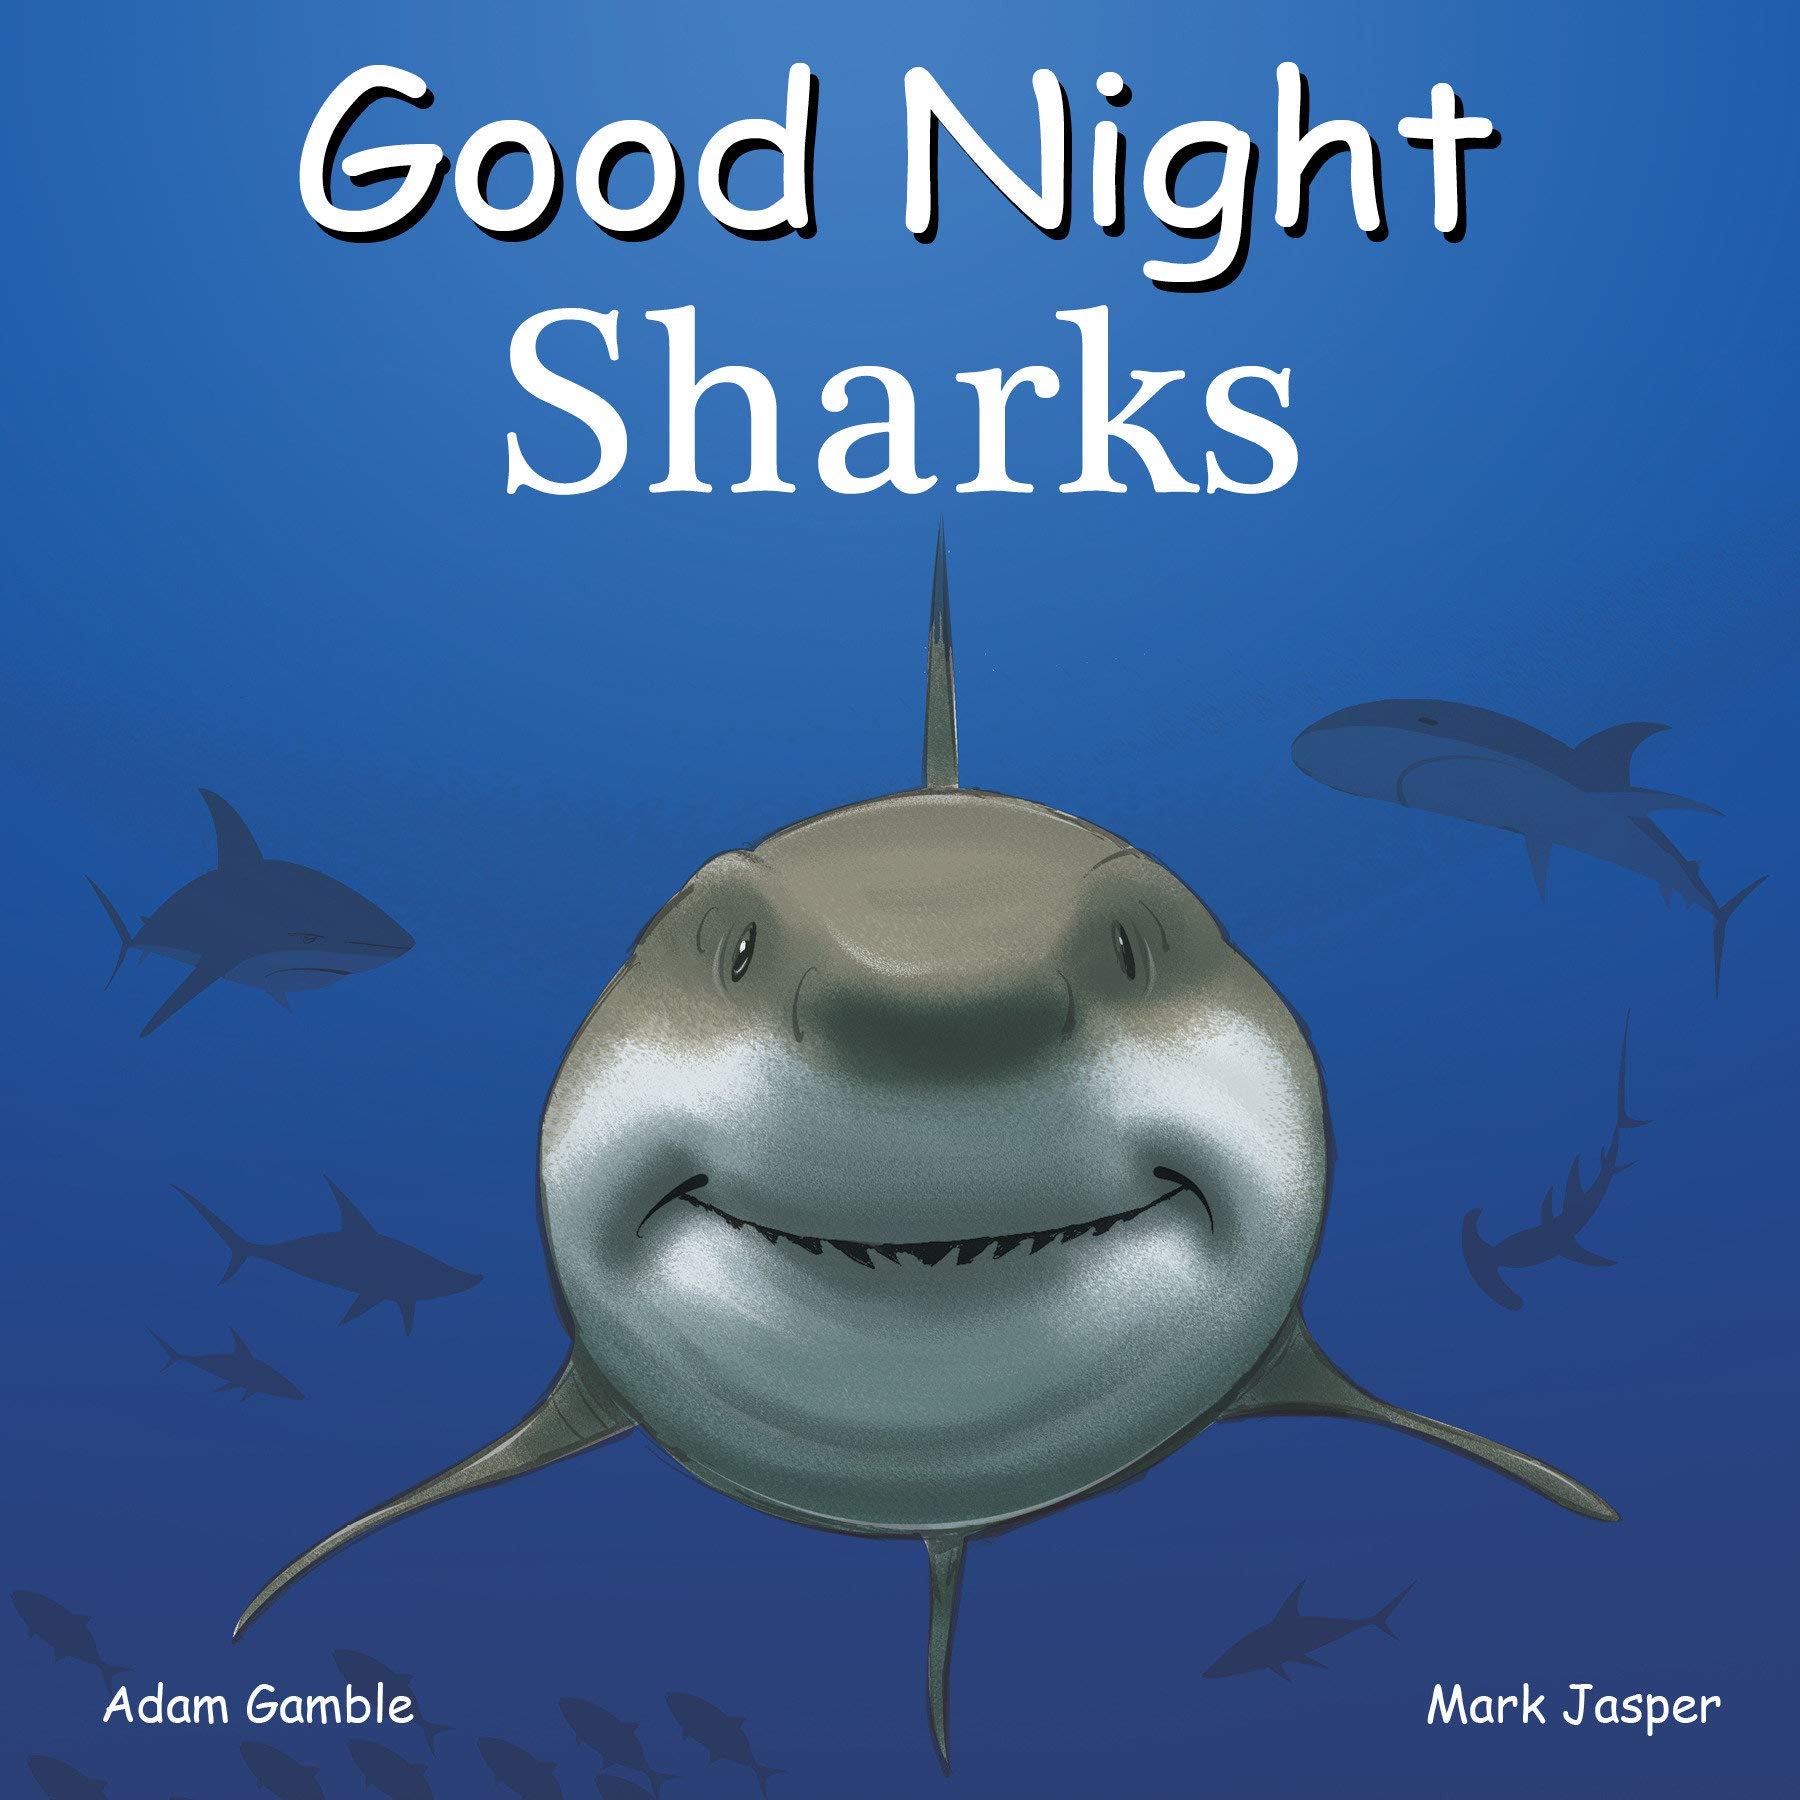 Good Night Sharks - Drifts East